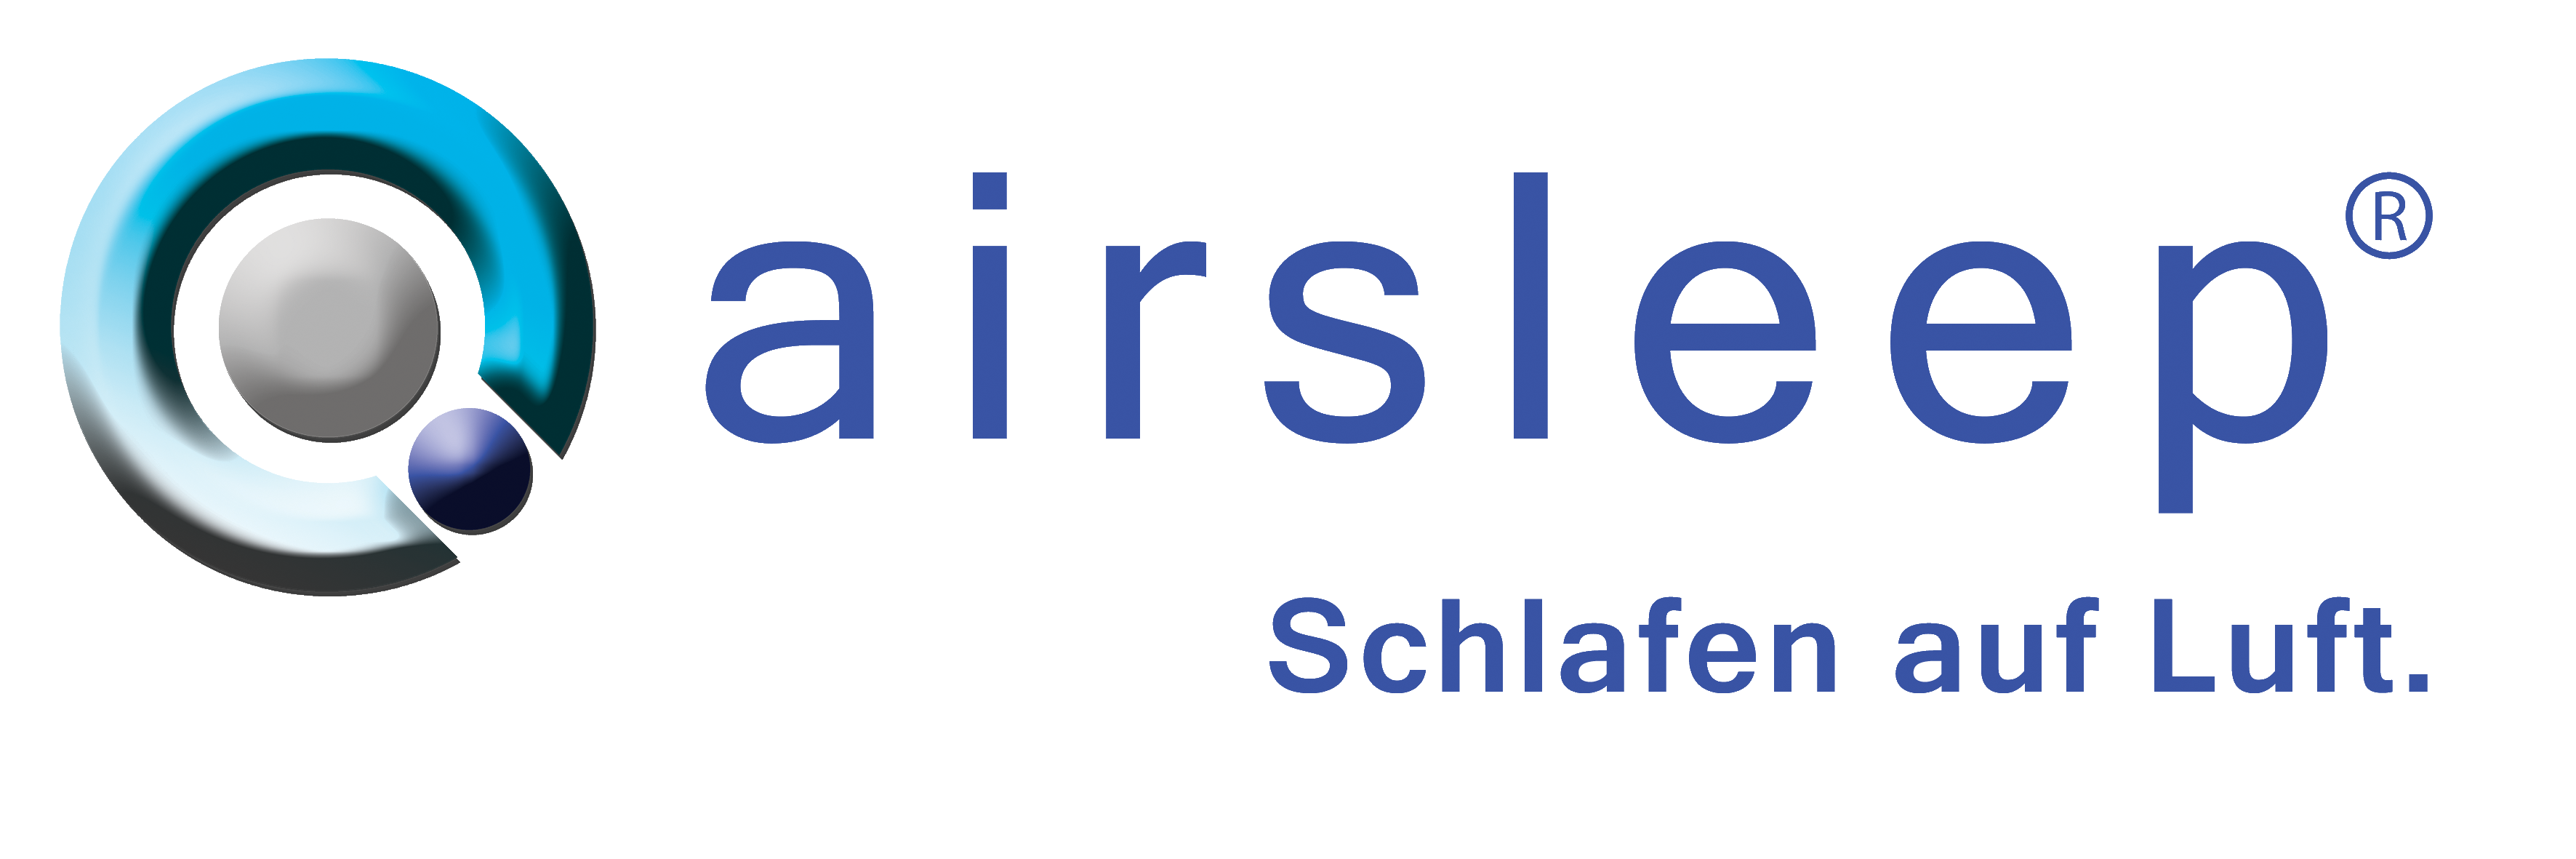 15-logo-airsleep-blau-mit-claim-schlafen-auf-luft.html.png